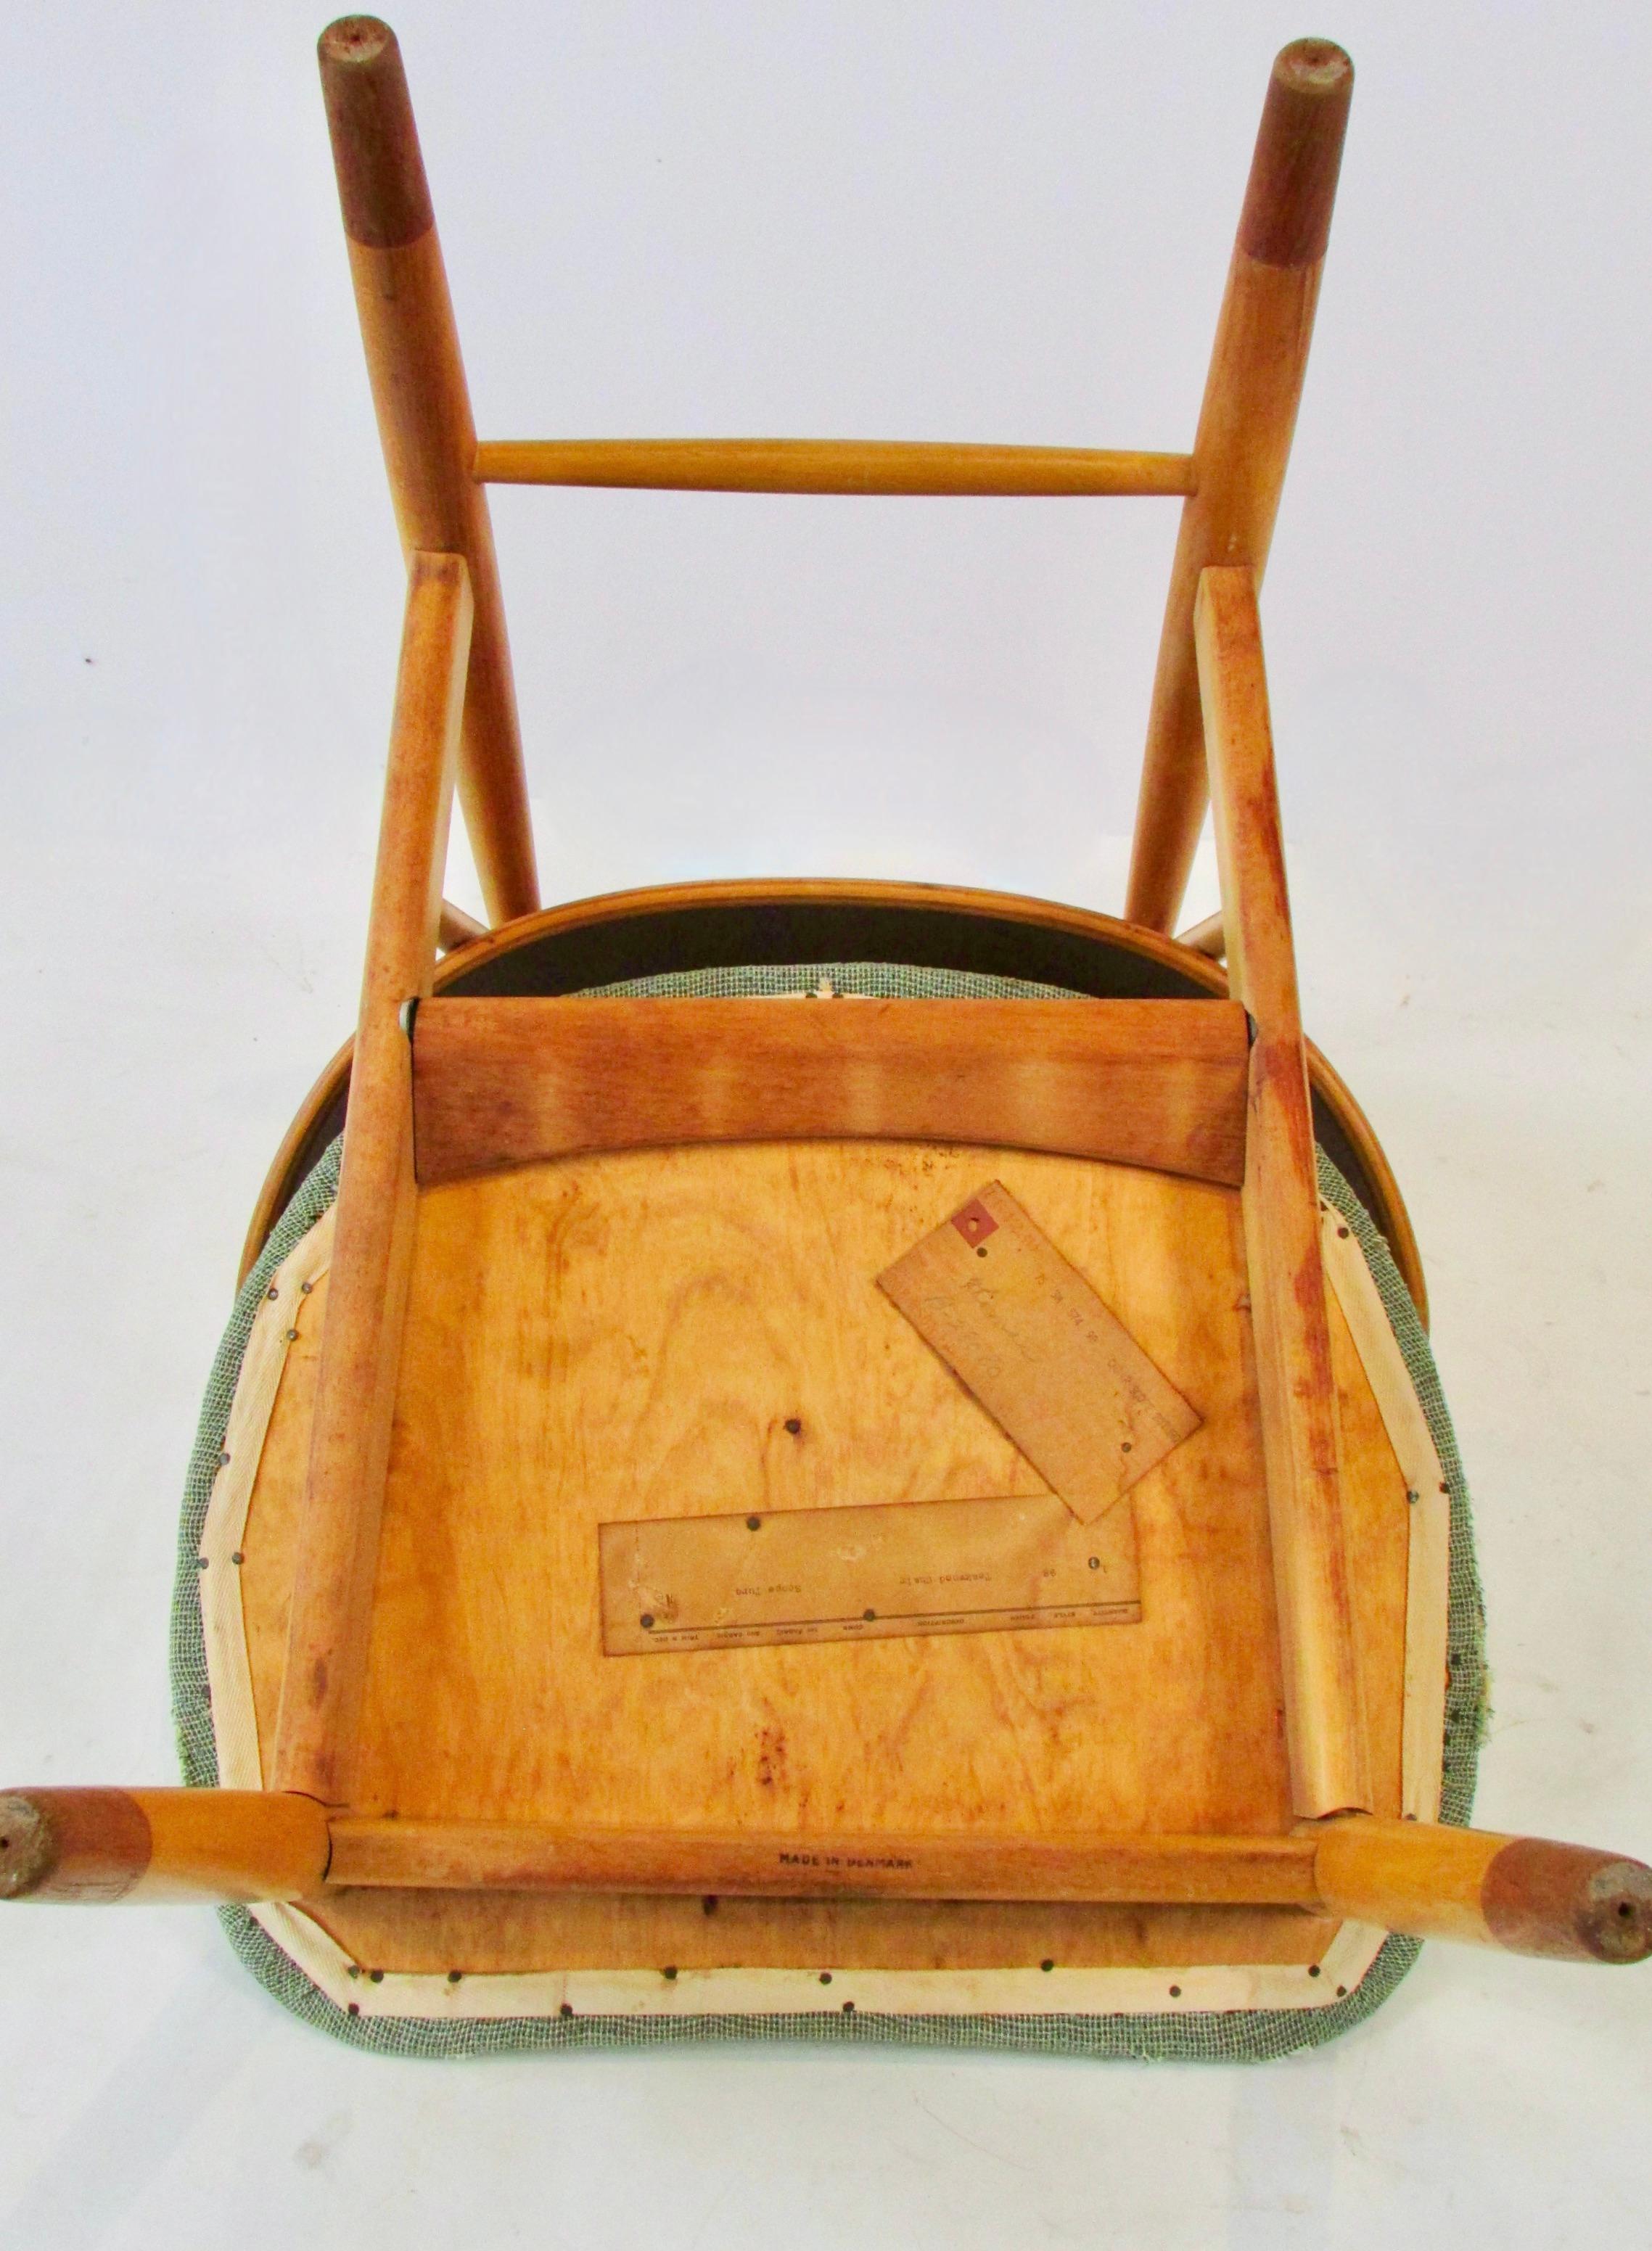 Ib Kofod-Larsen Penguin chair for Christiansen and Larsen Denmark 1955 For Sale 2